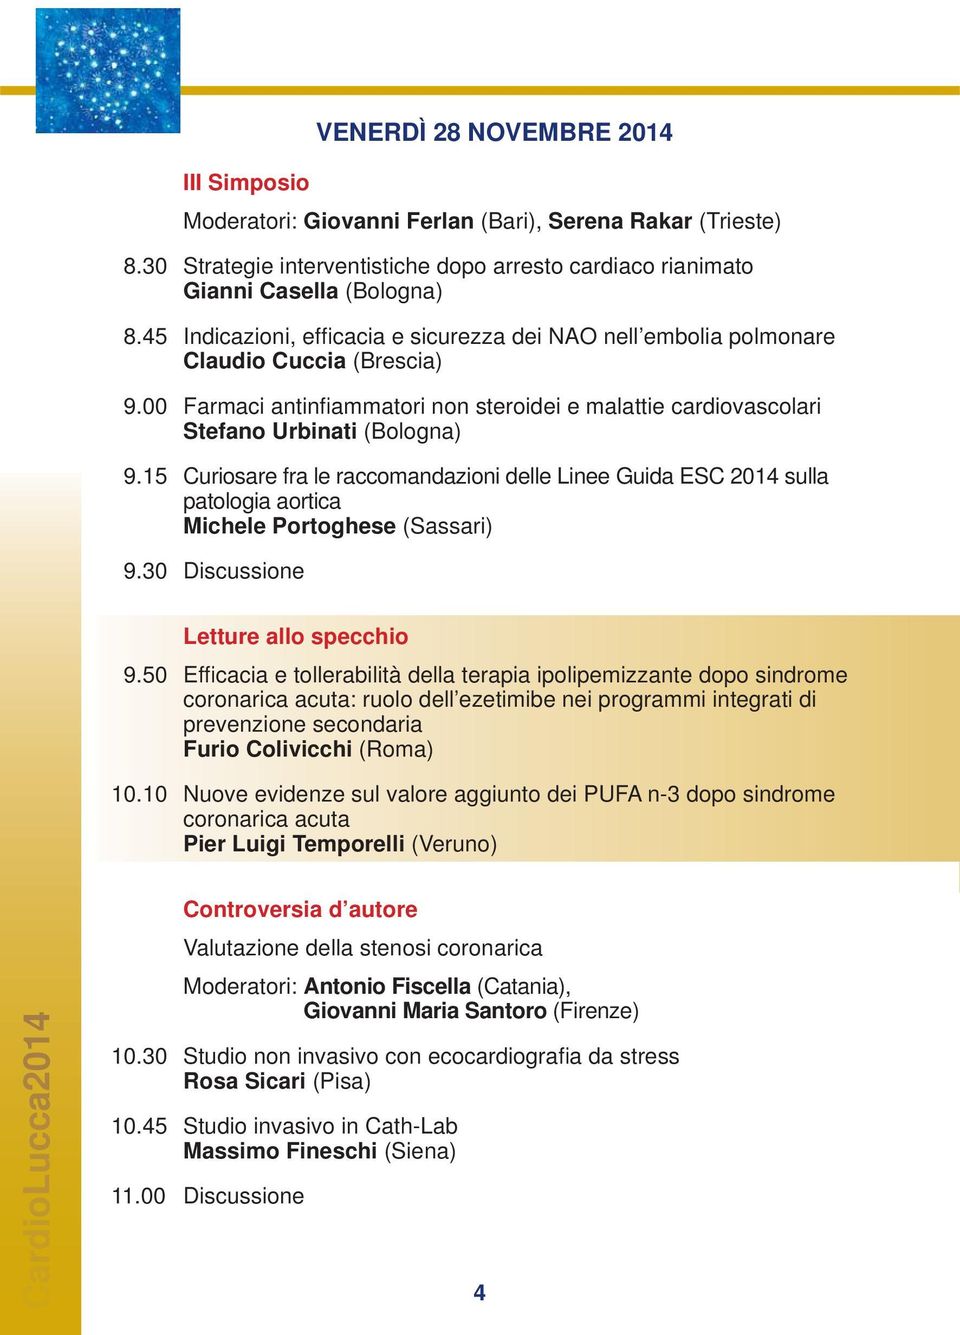 15 Curiosare fra le raccomandazioni delle Linee Guida ESC 2014 sulla patologia aortica Michele Portoghese (Sassari) 9.30 Discussione Letture allo specchio 9.